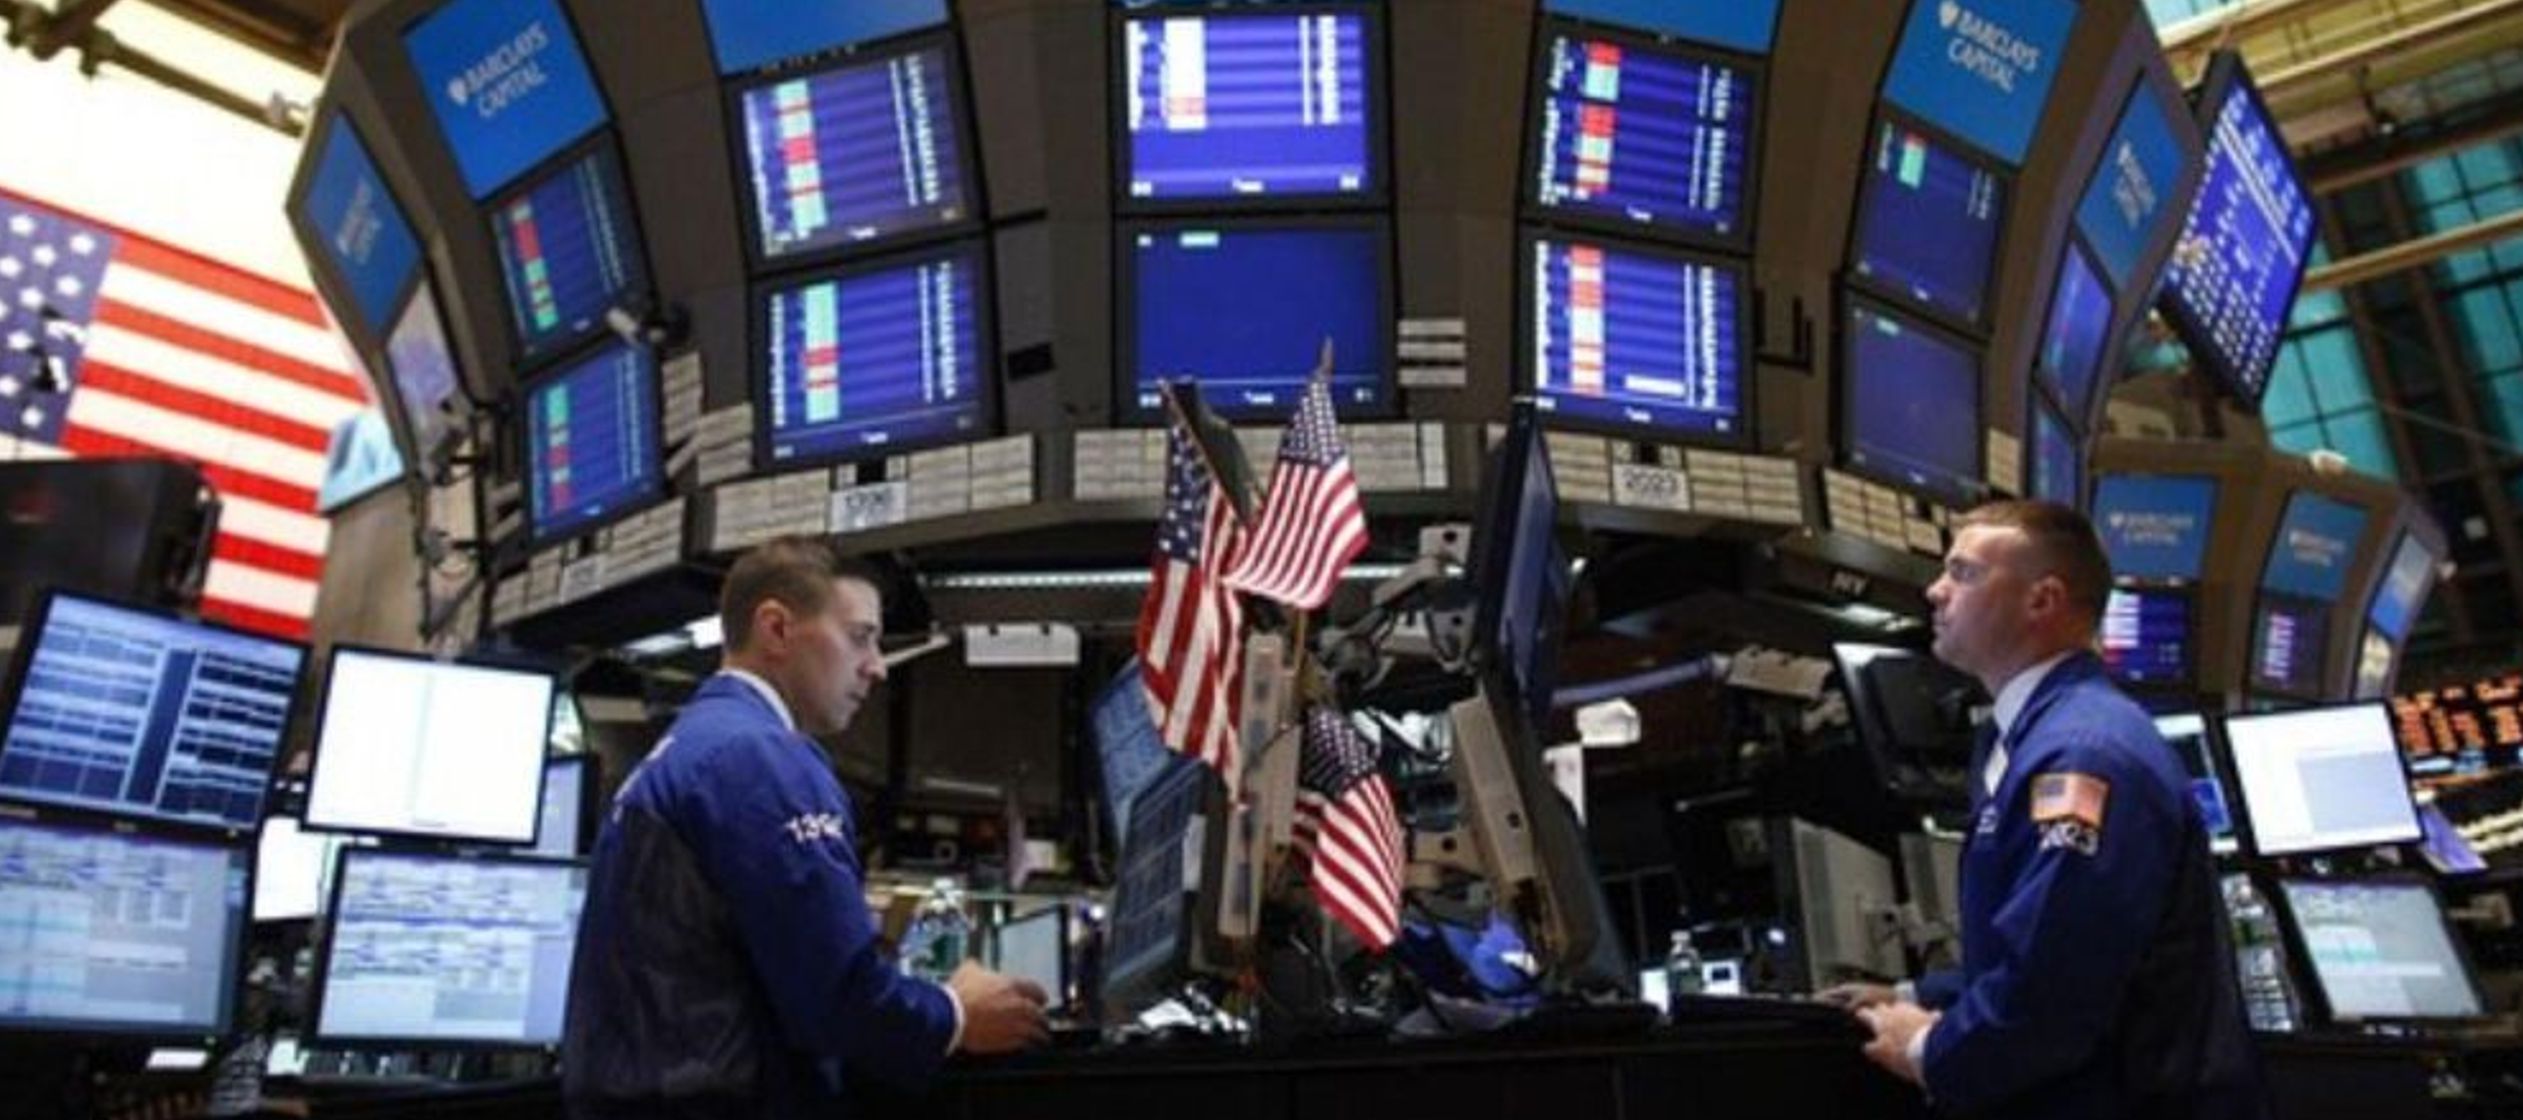 El índice S&P 500 cerró con una pérdida tras tocar un máximo...